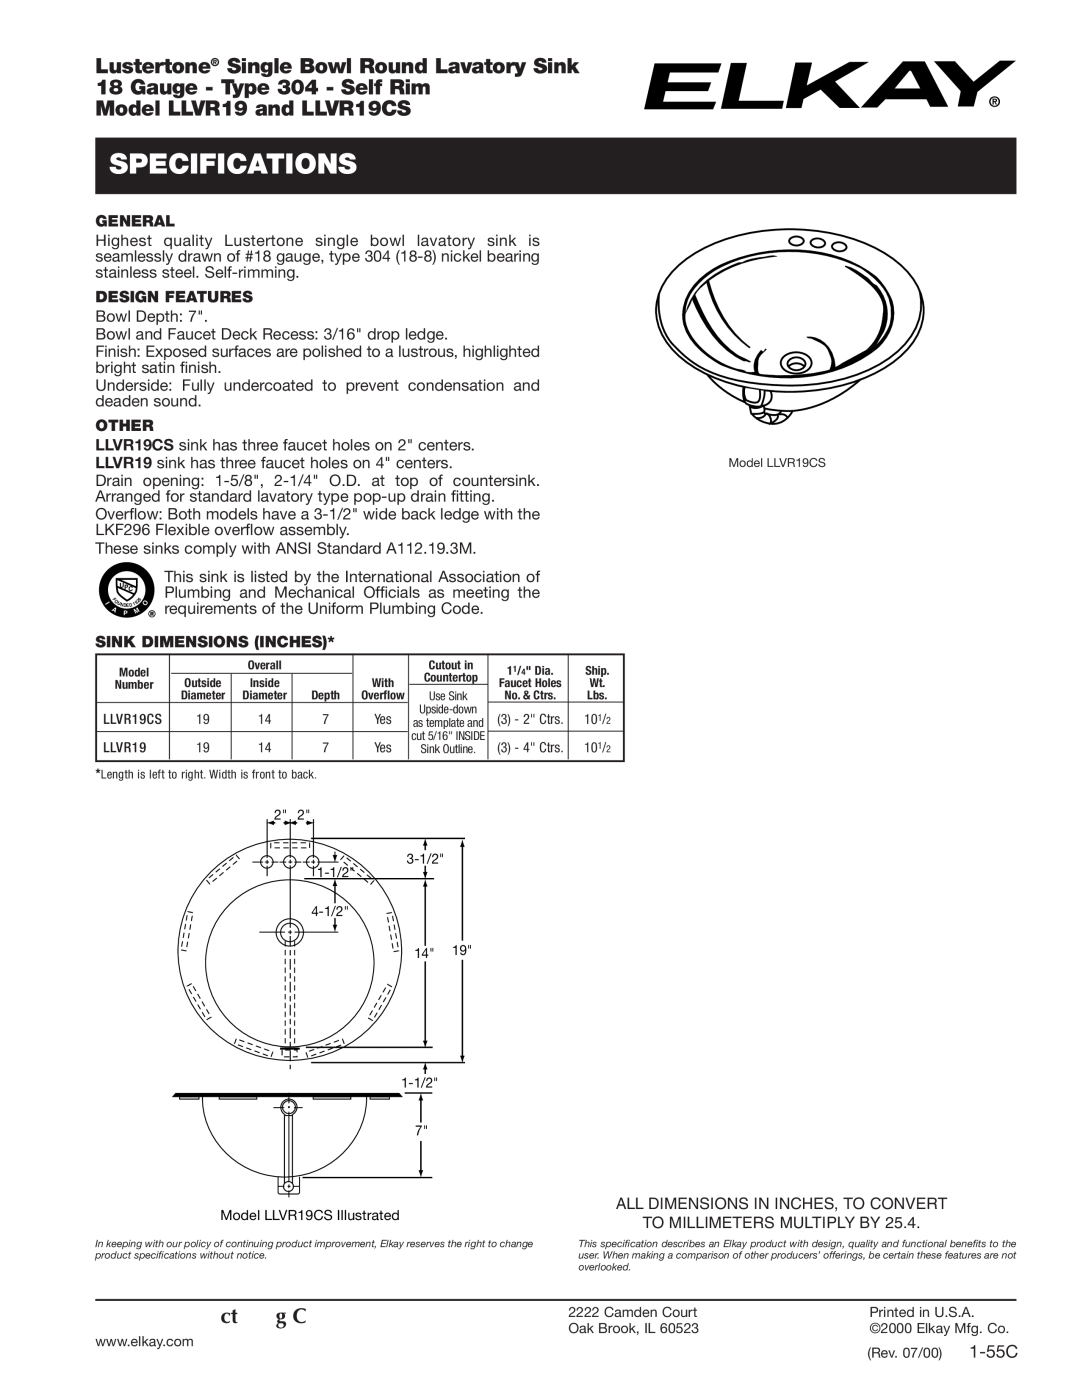 Elkay LLVR19CS specifications Specifications, Lustertone Single Bowl Round Lavatory Sink, Gauge - Type 304 - Self Rim 